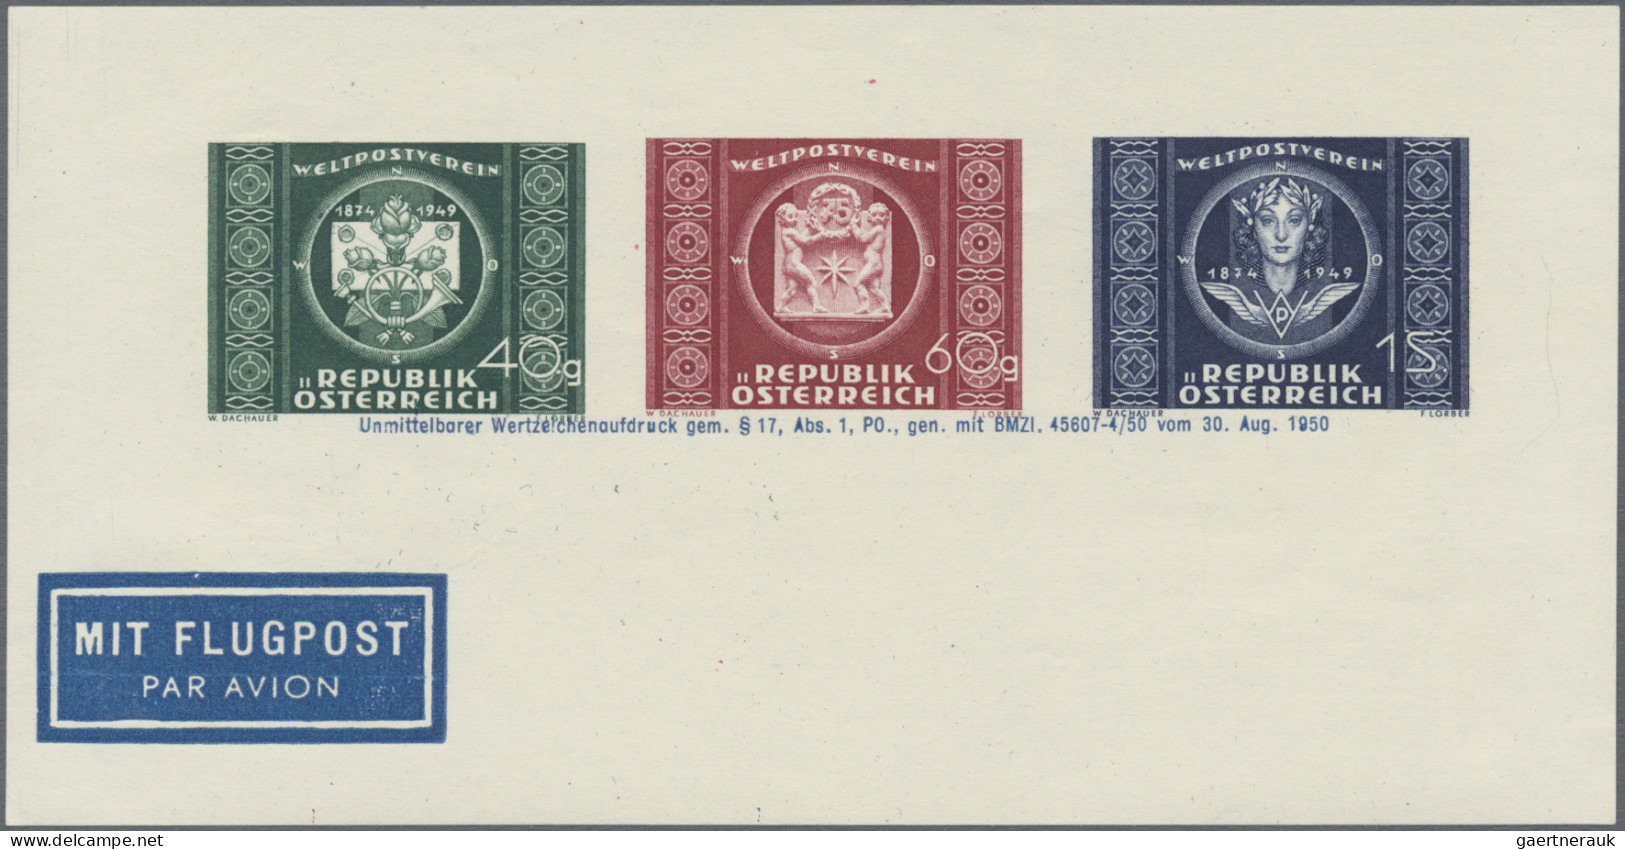 Österreich: 1837/1992, sauberer Posten mit ca. 115 Briefen/Karten und Ganzsachen